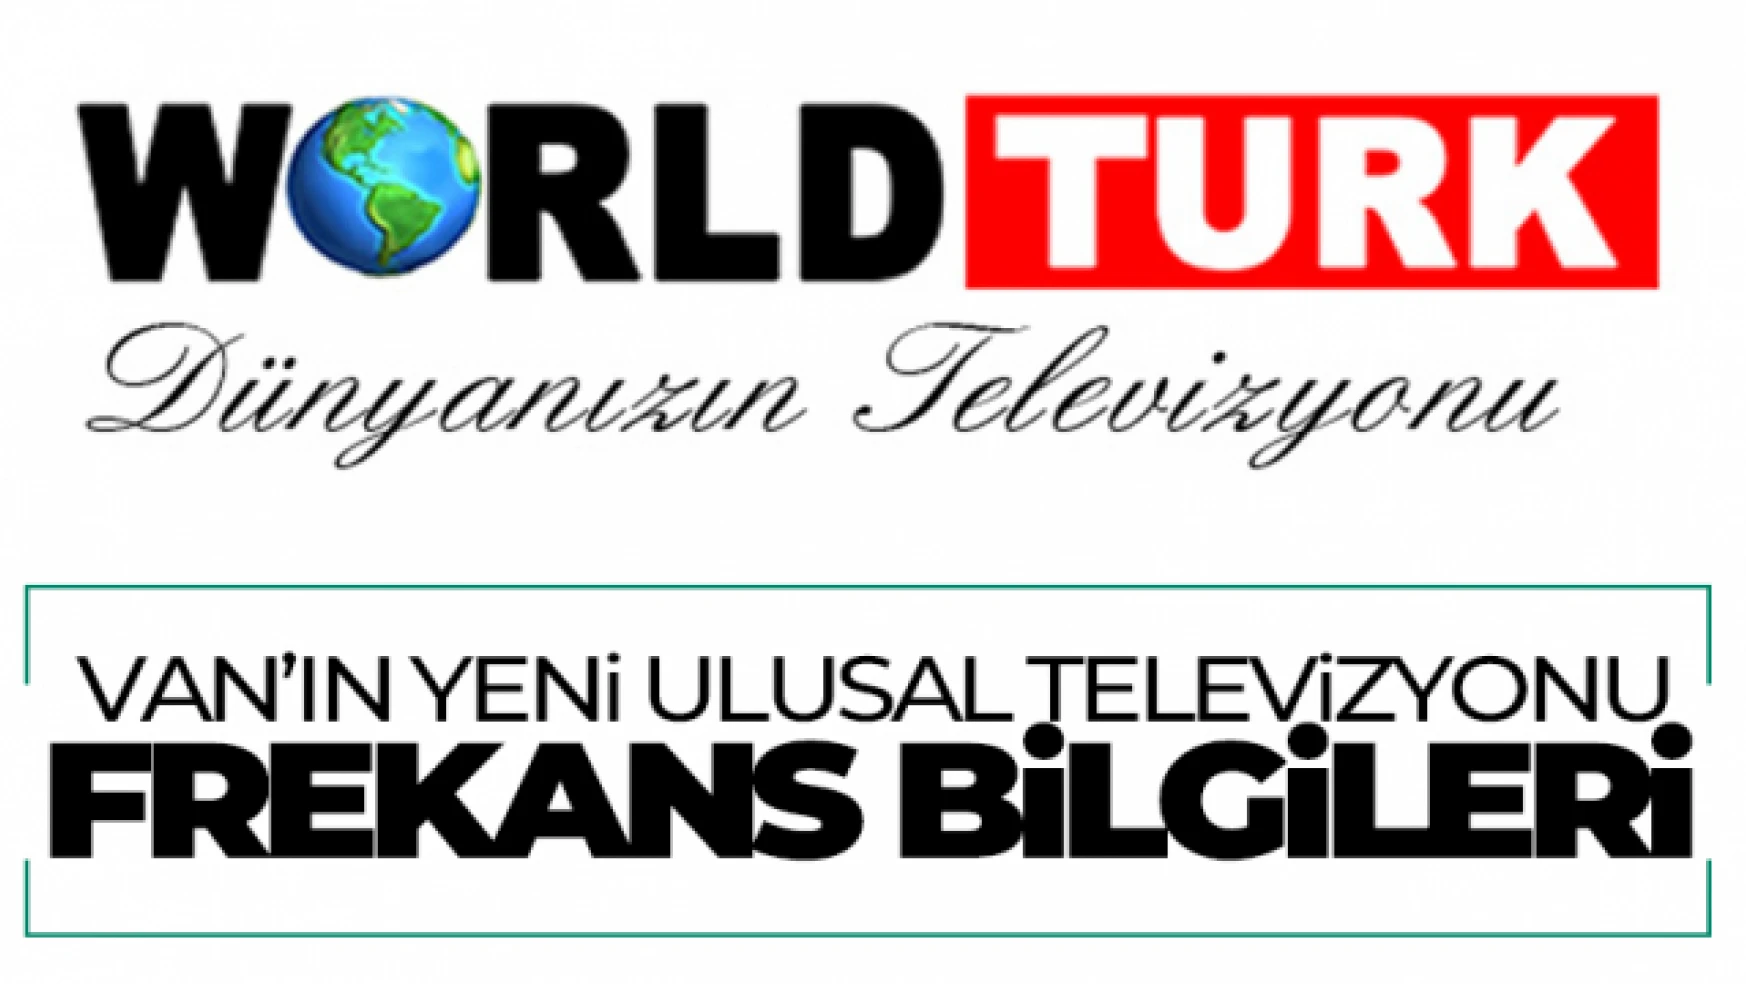 World Türk uydu frekansı nedir? World Türk Van'ın yeni televizyonu